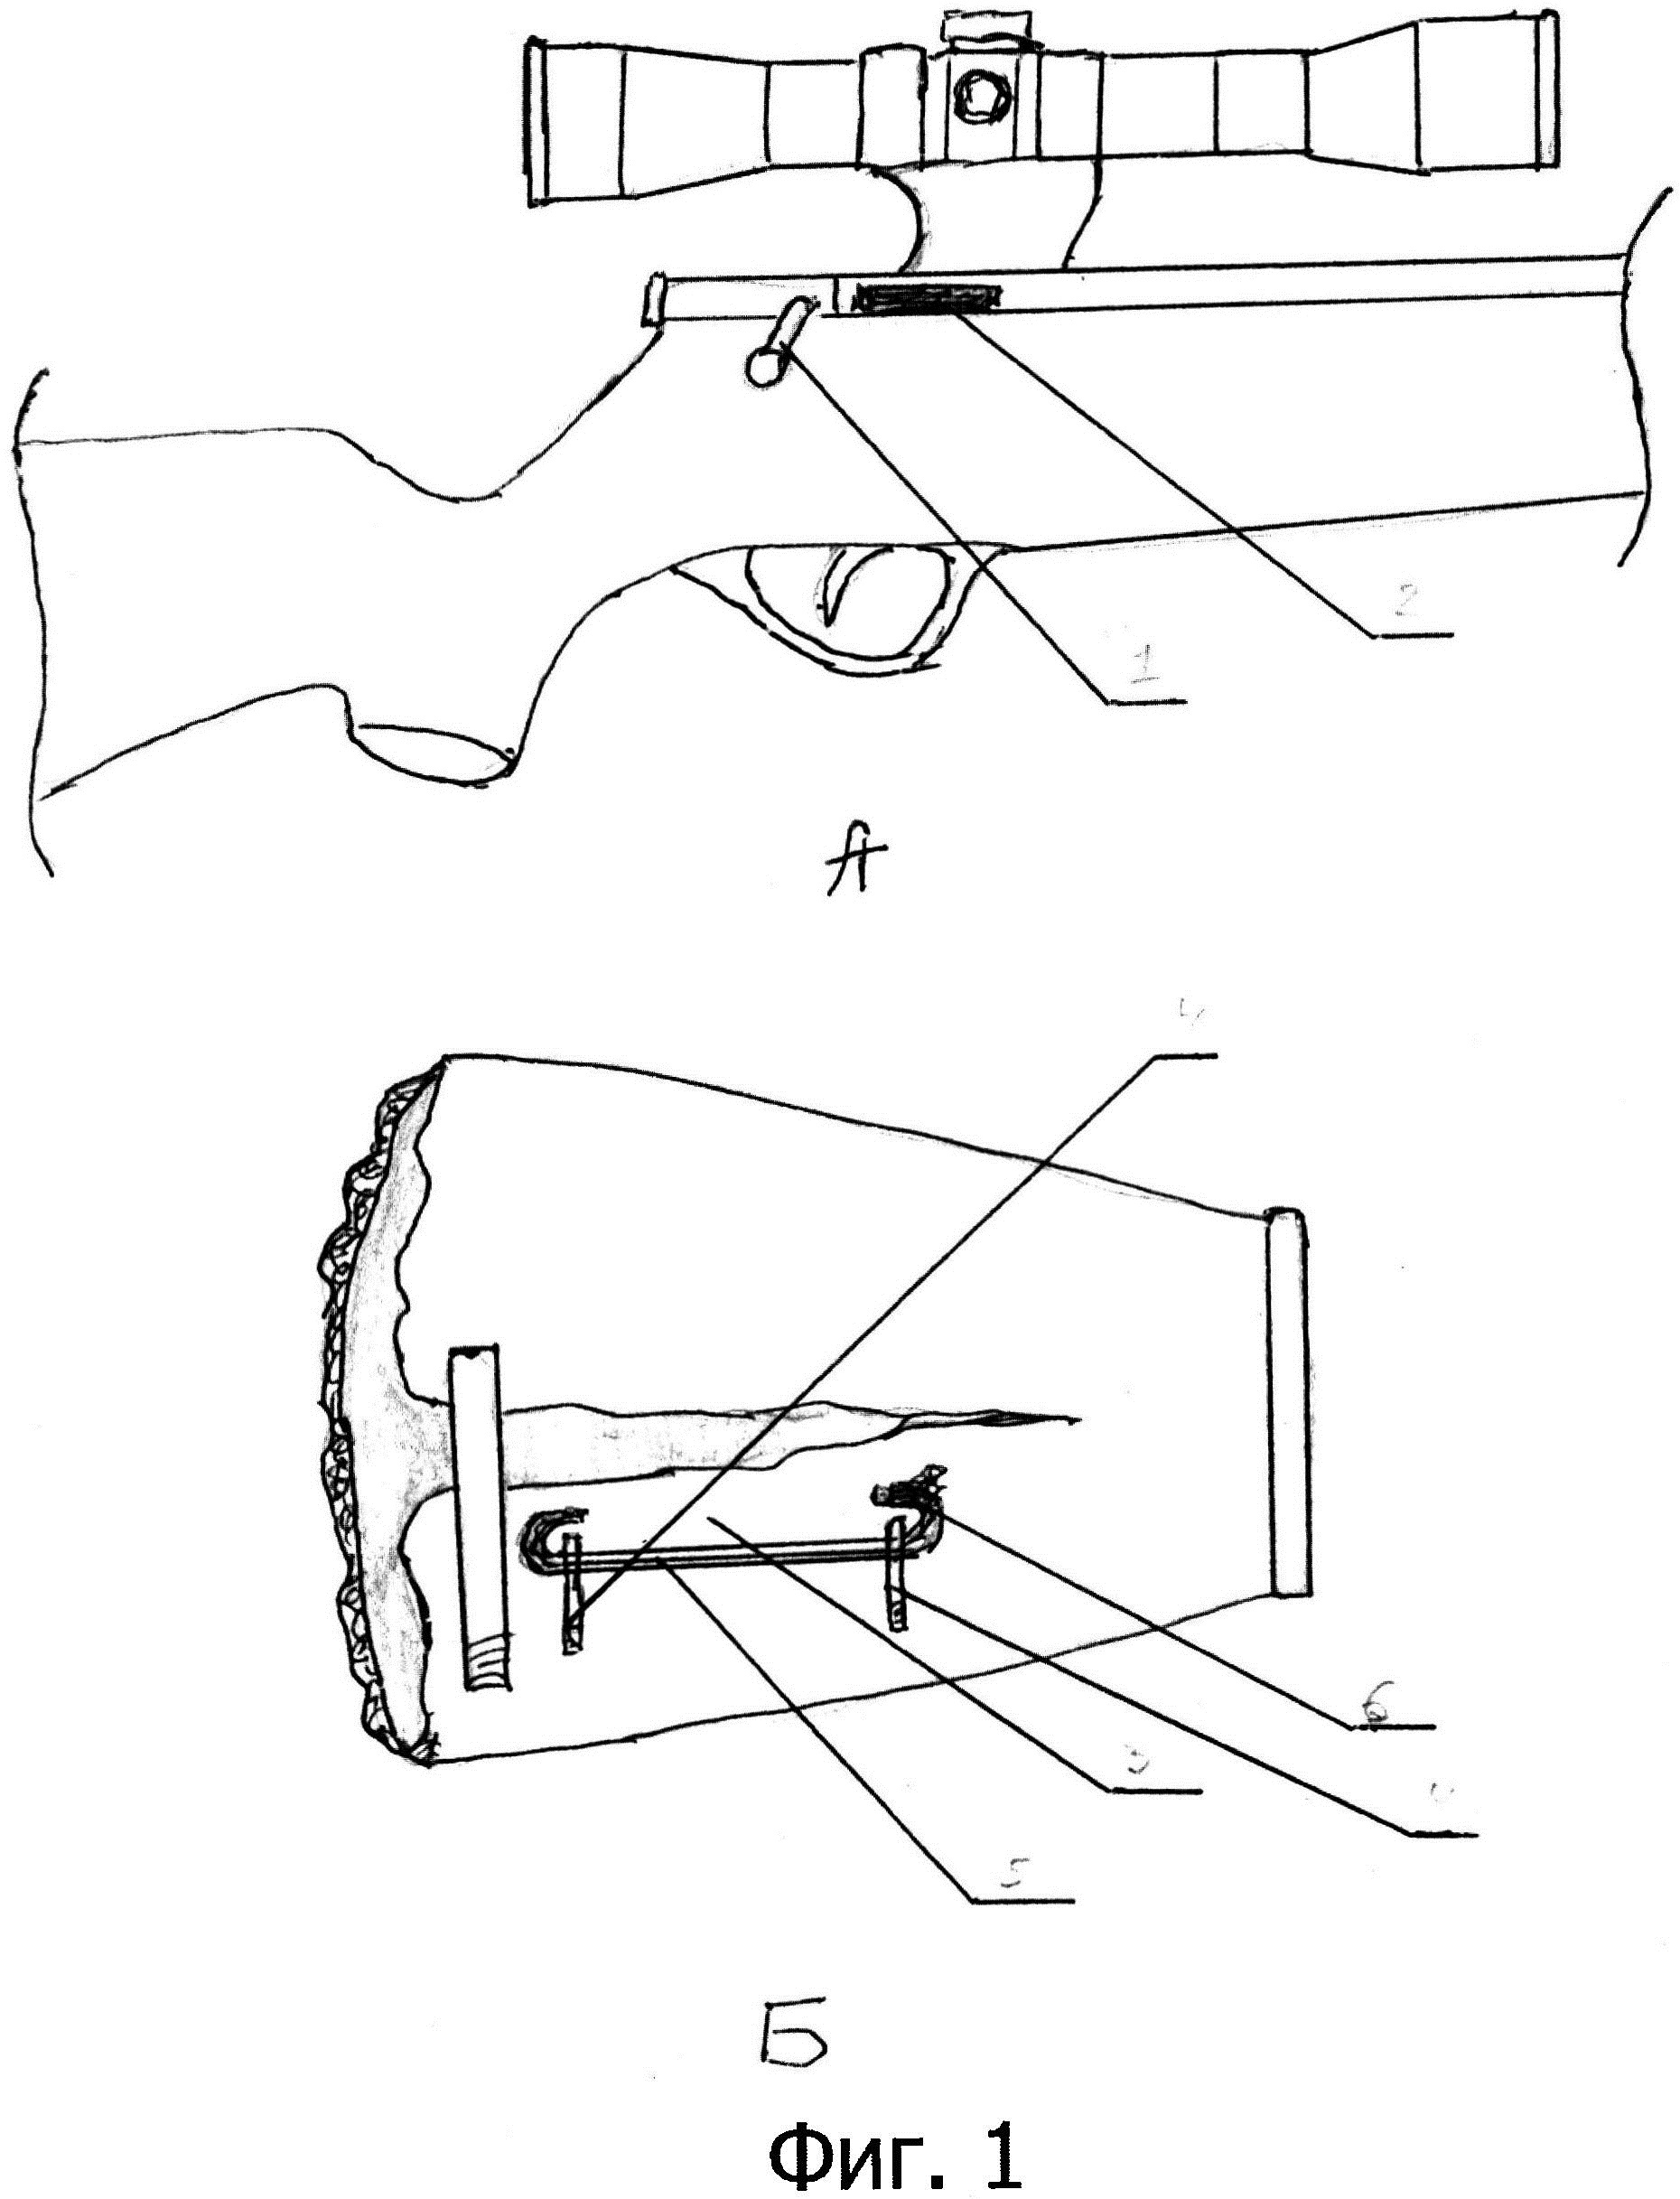 Меховая муфта для теплоизоляции руки снайпера при стрельбе из снайперской винтовки